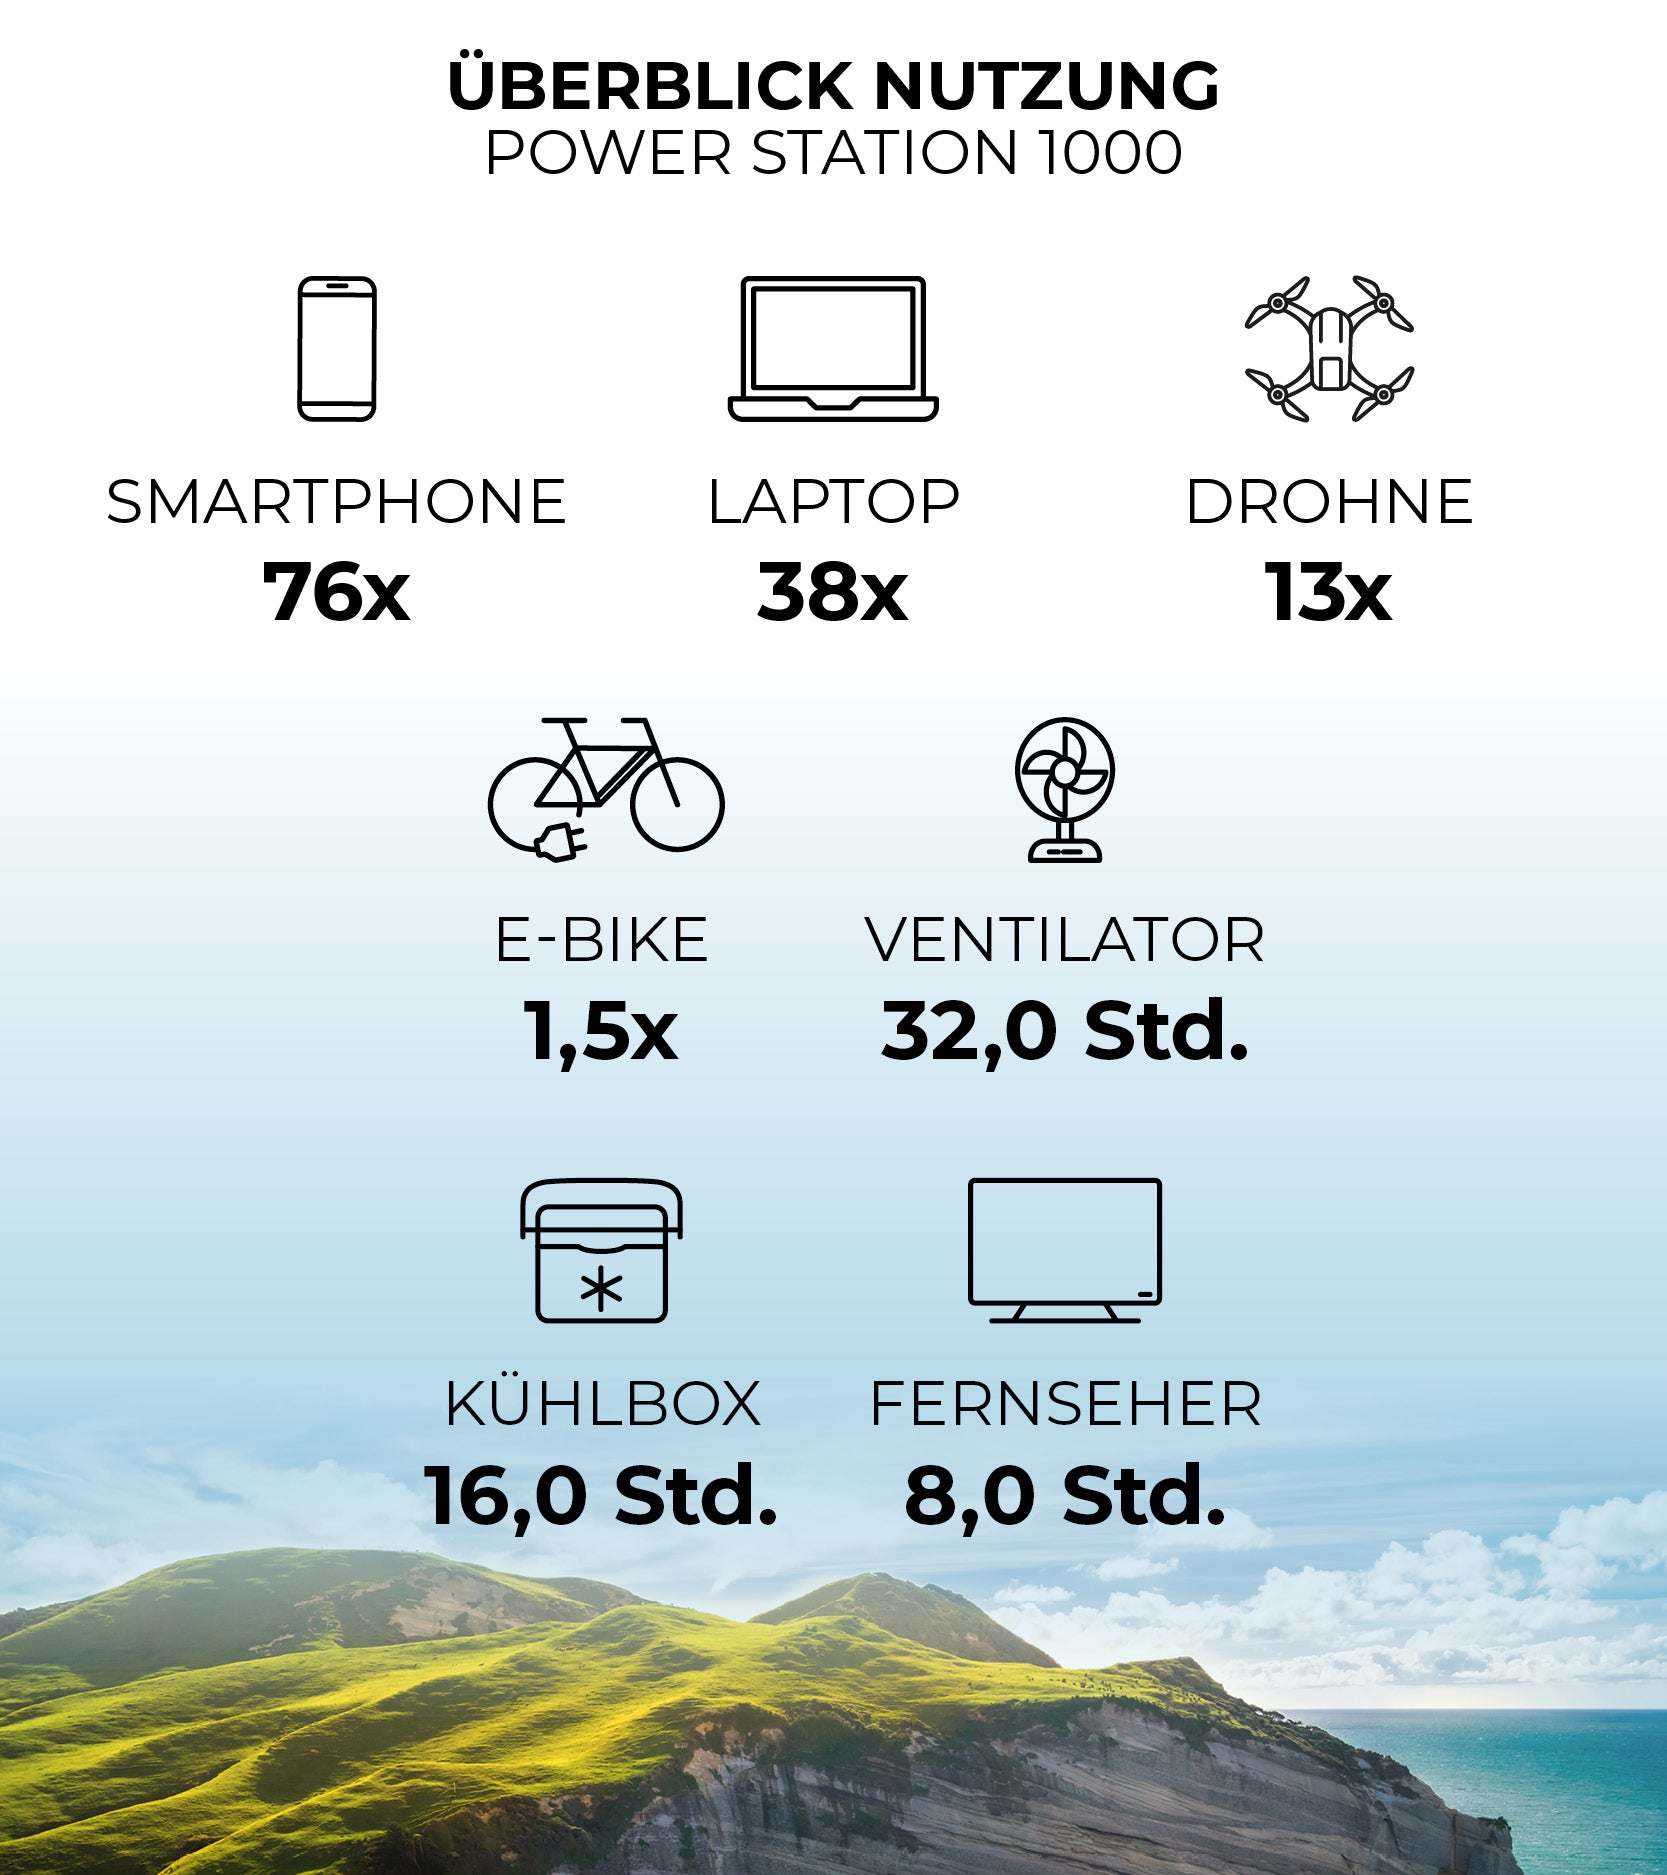 Überblick der Nutzung der Power Station 1000